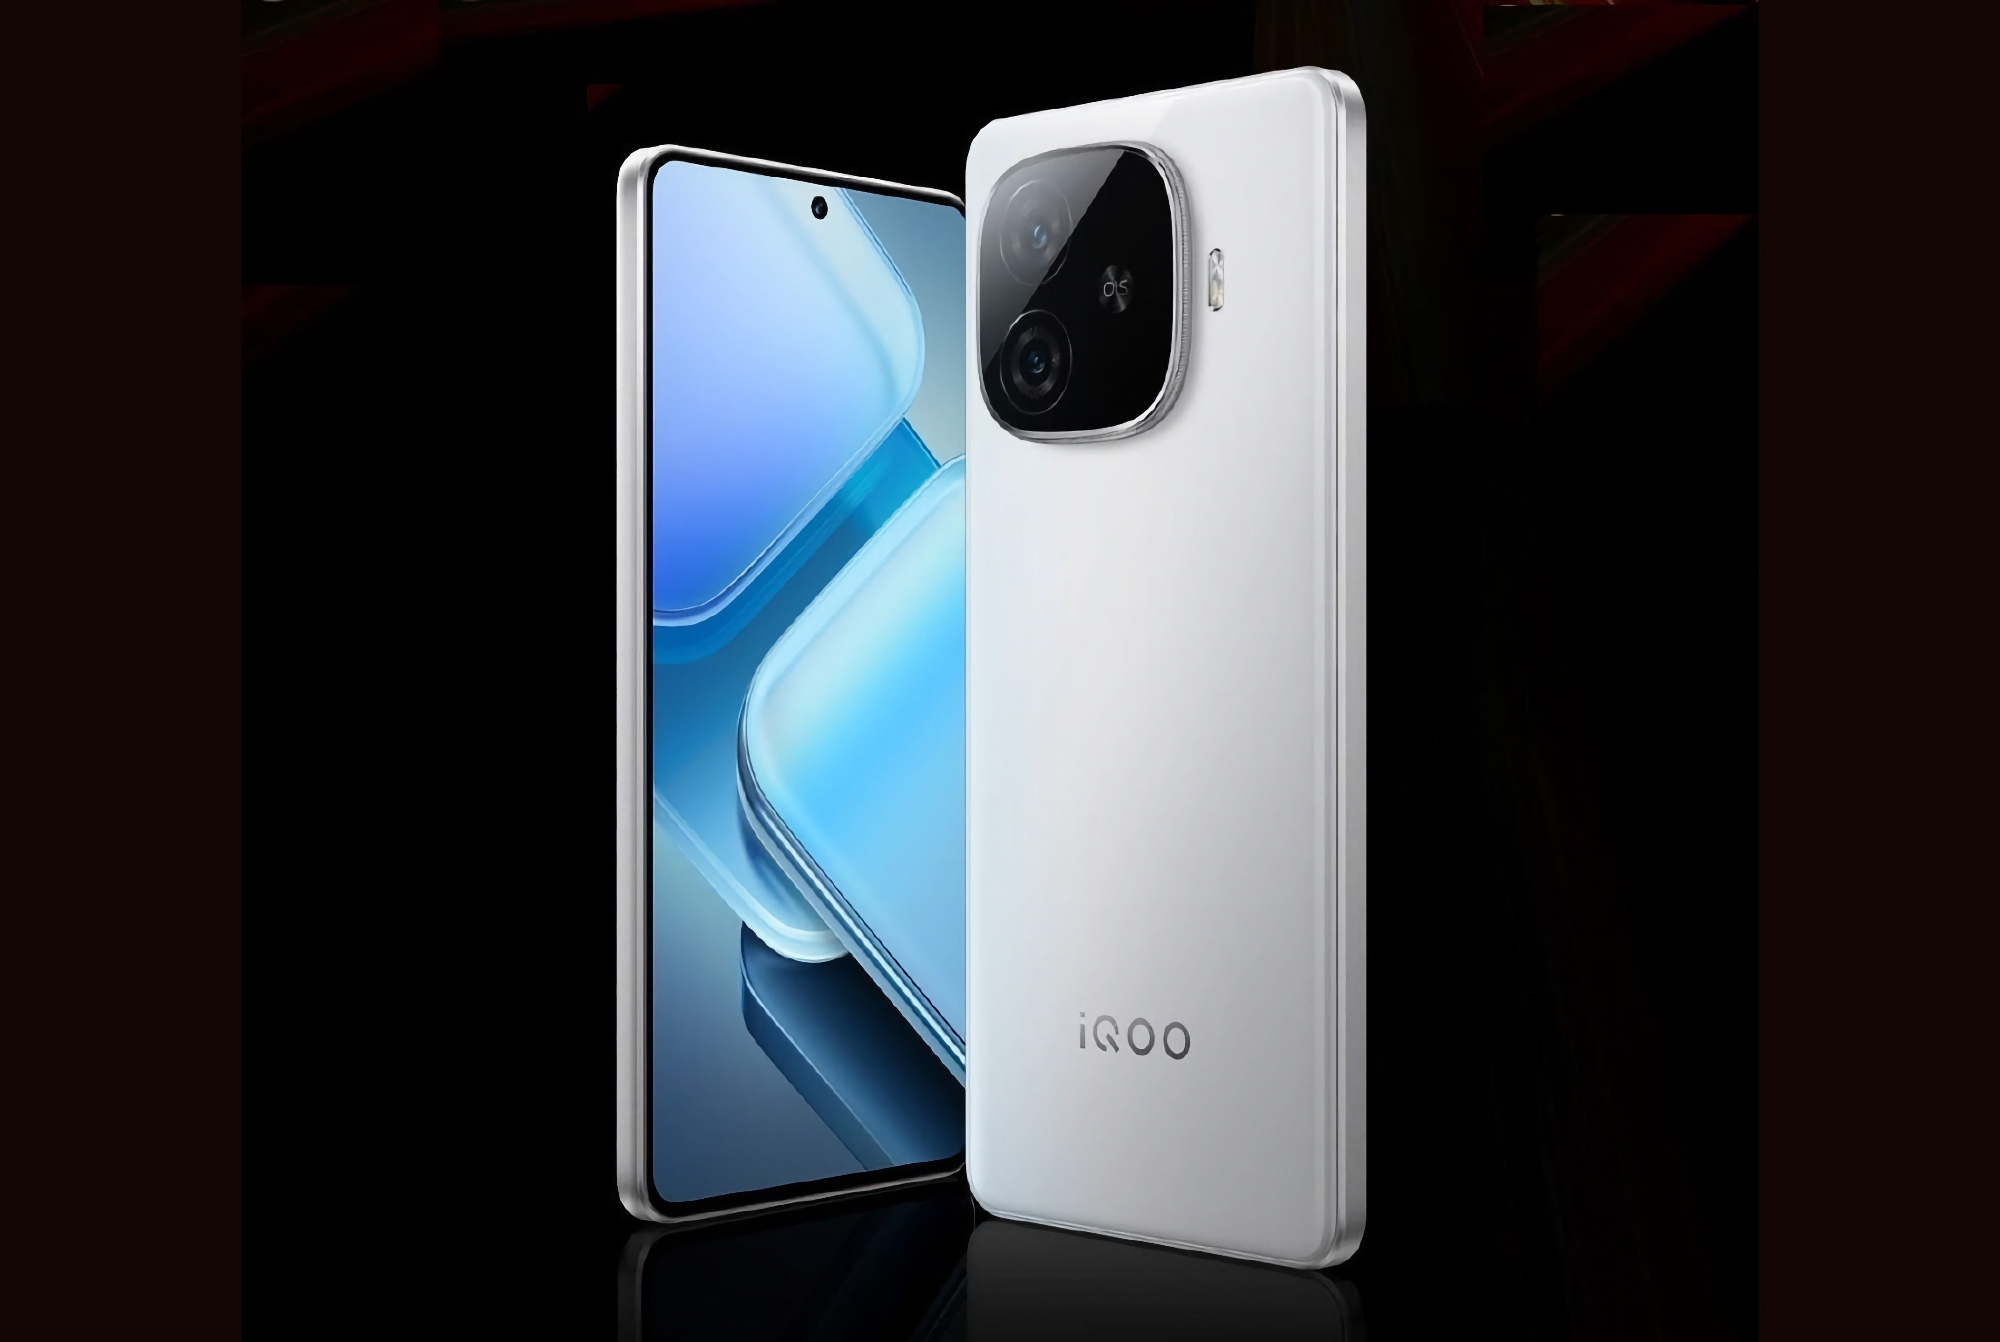 Niet alleen de iQOO Z9 Turbo: vivo onthult op 24 april ook de iQOO Z9 en iQOO Z9x